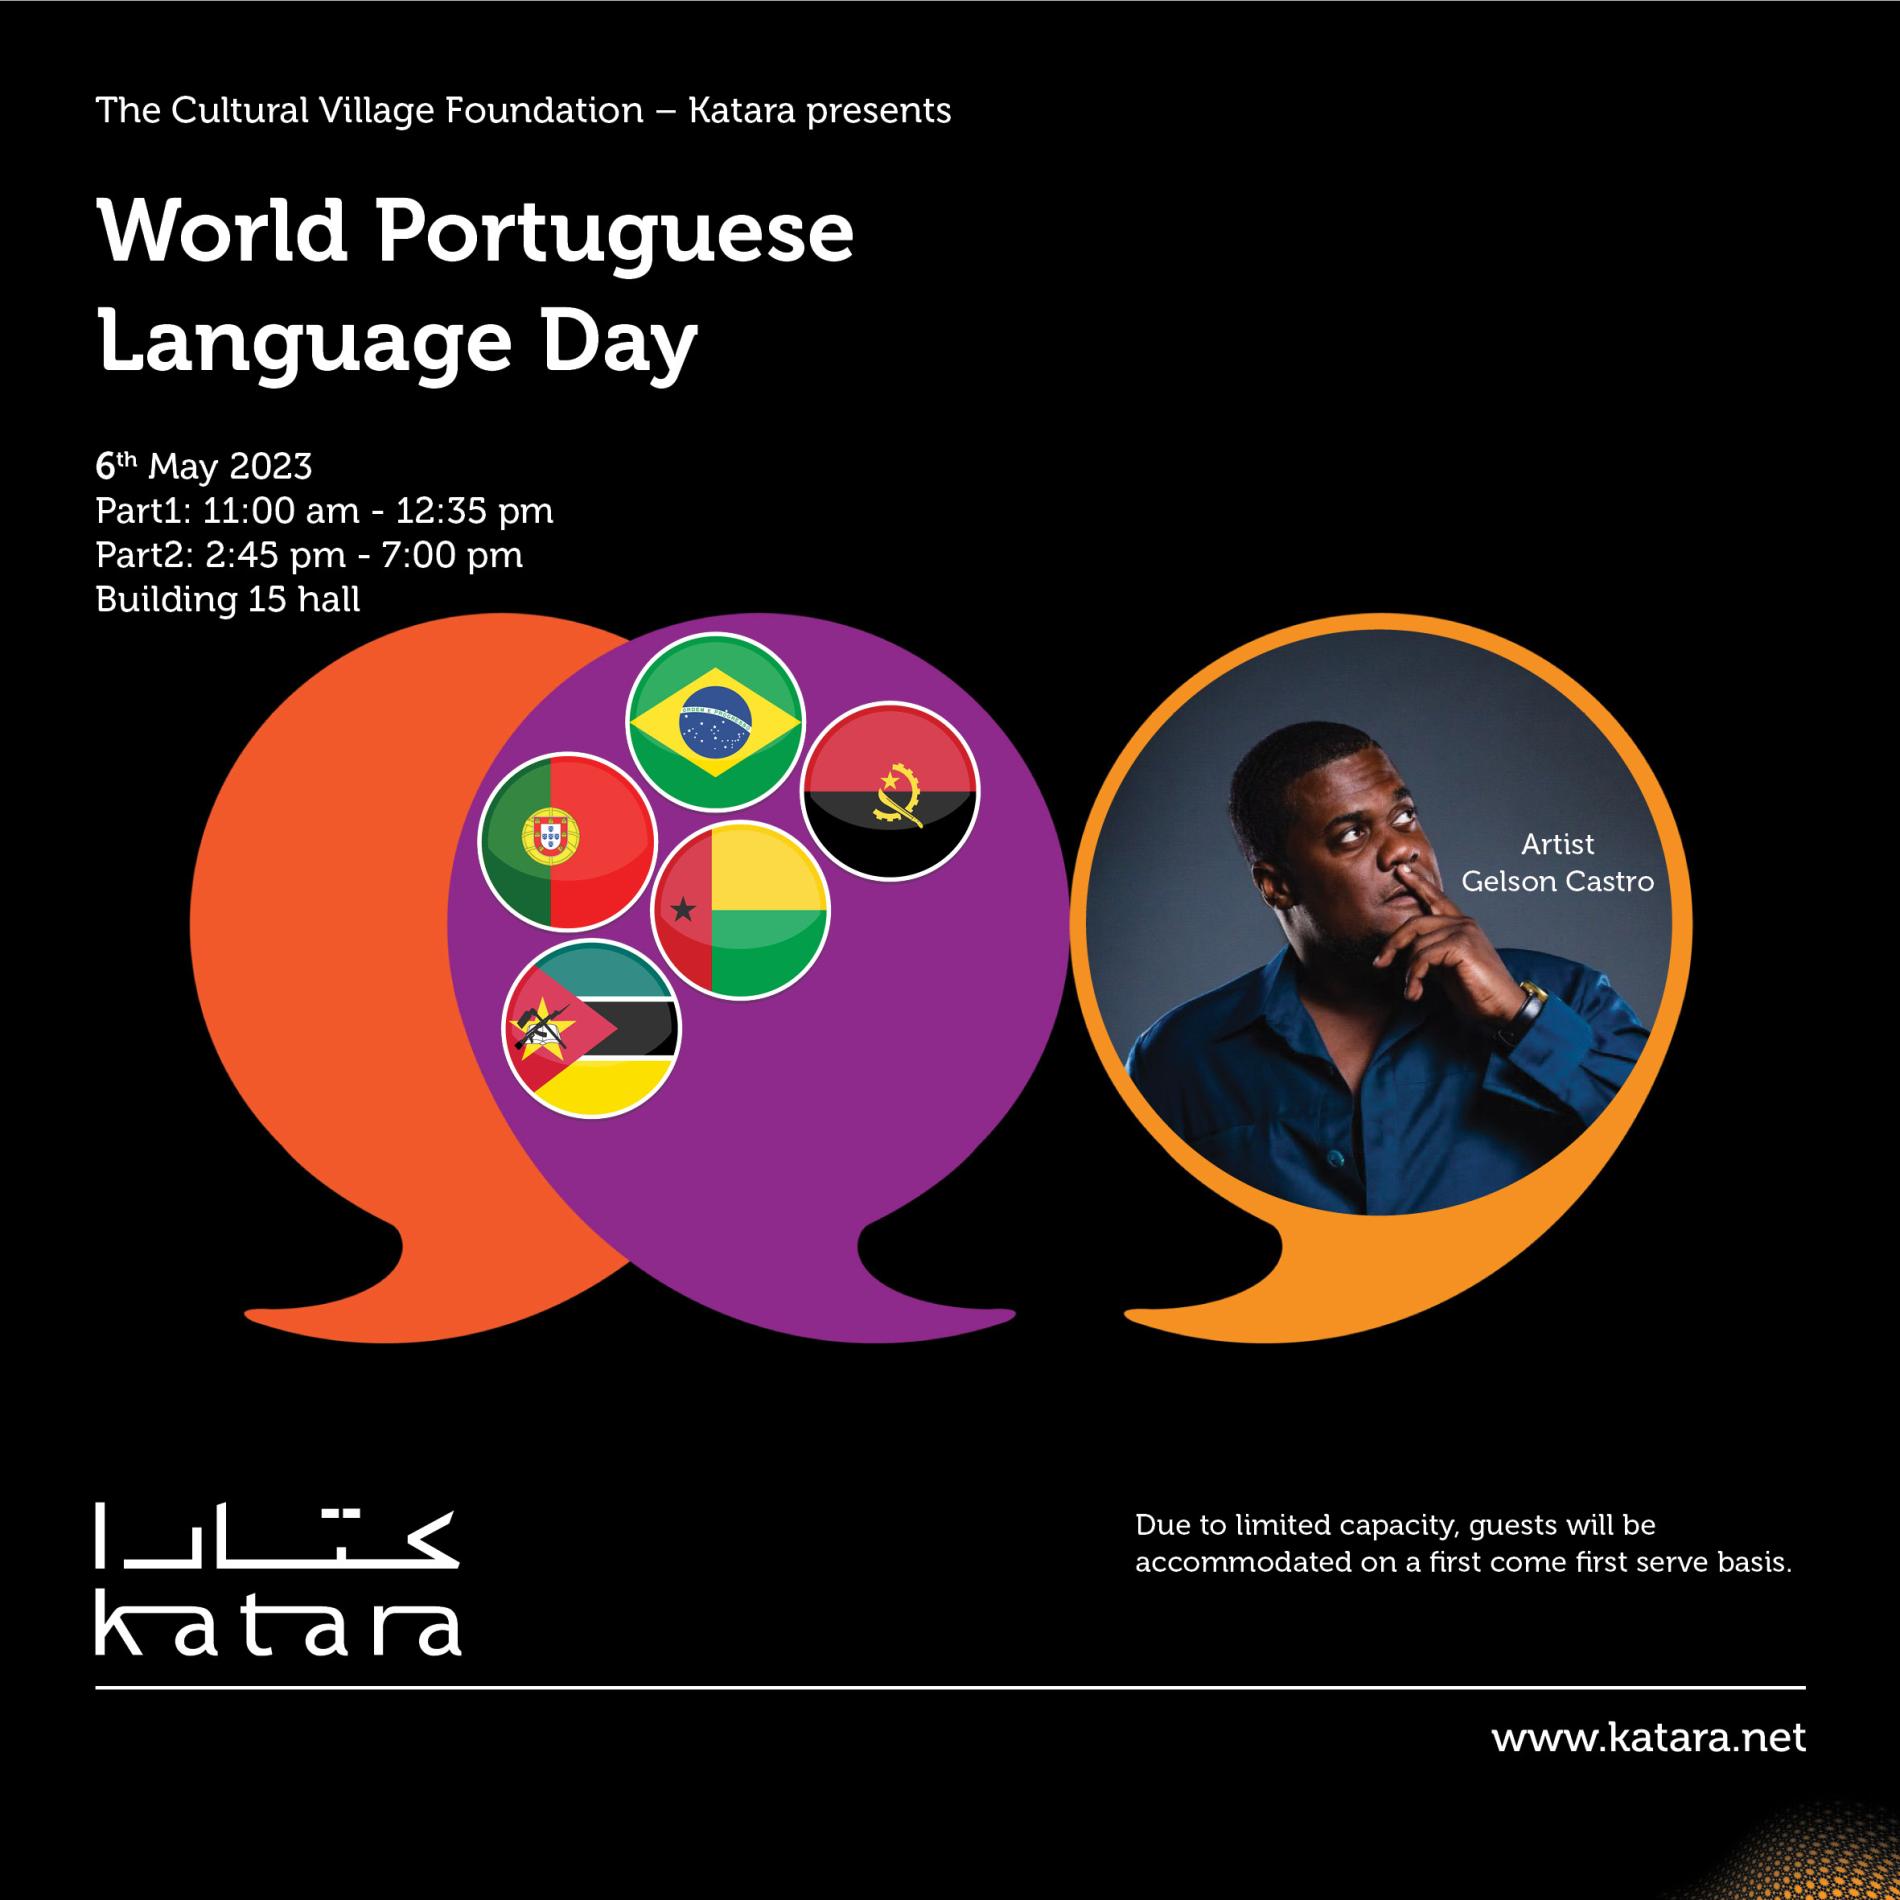 Maio 2021 - O Lugar da Língua Portuguesa